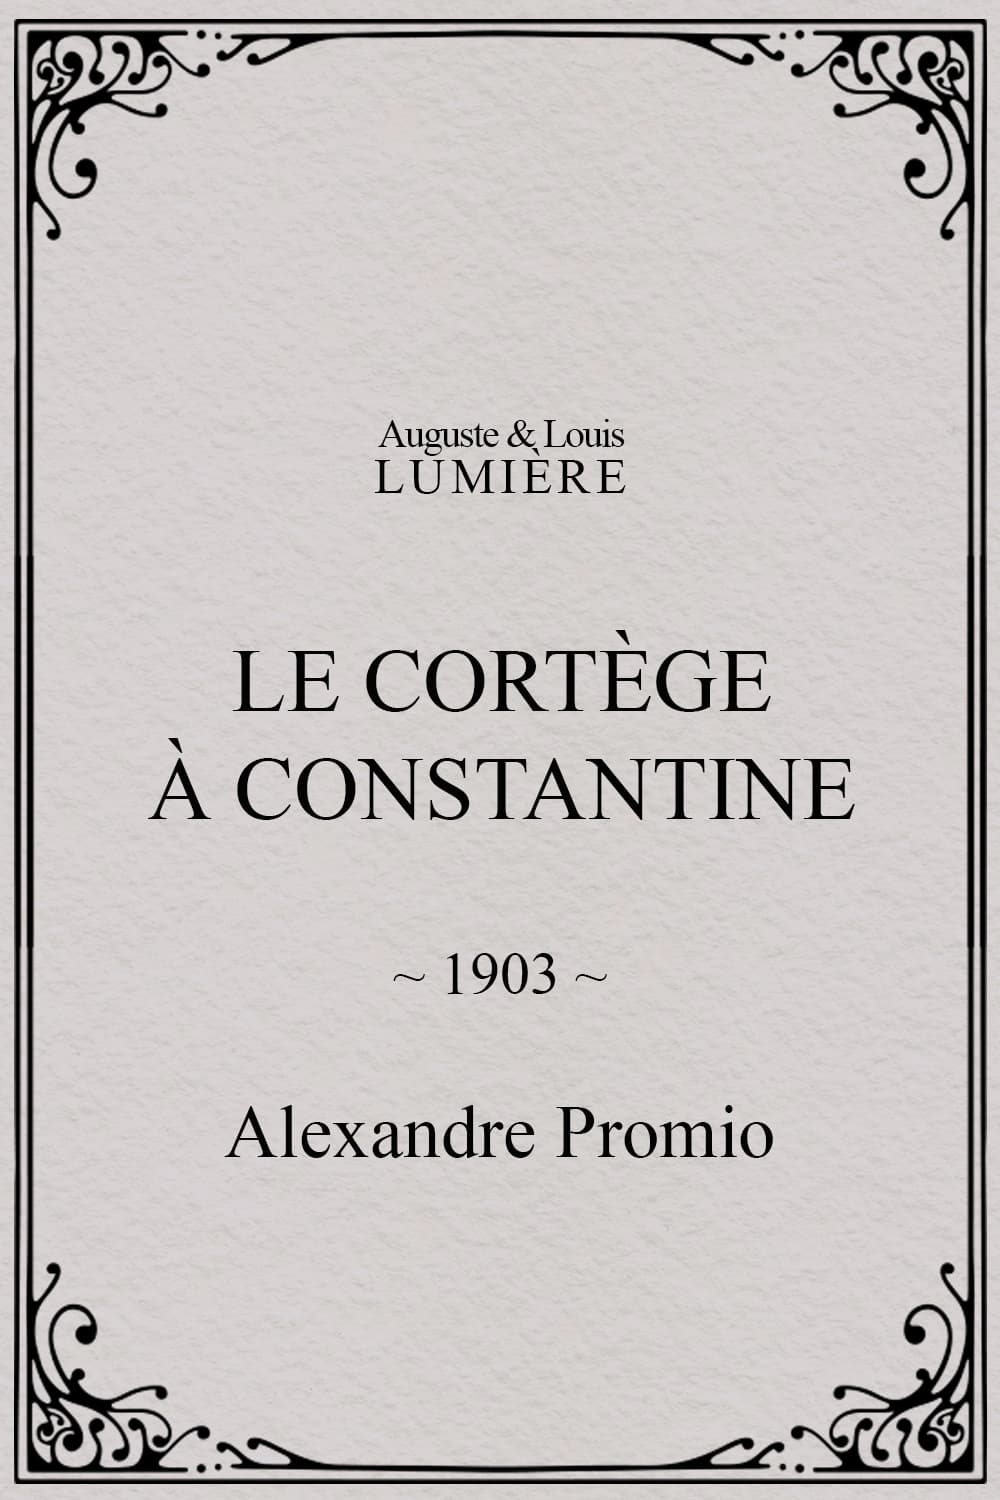 Le cortège à Constantine (1903)